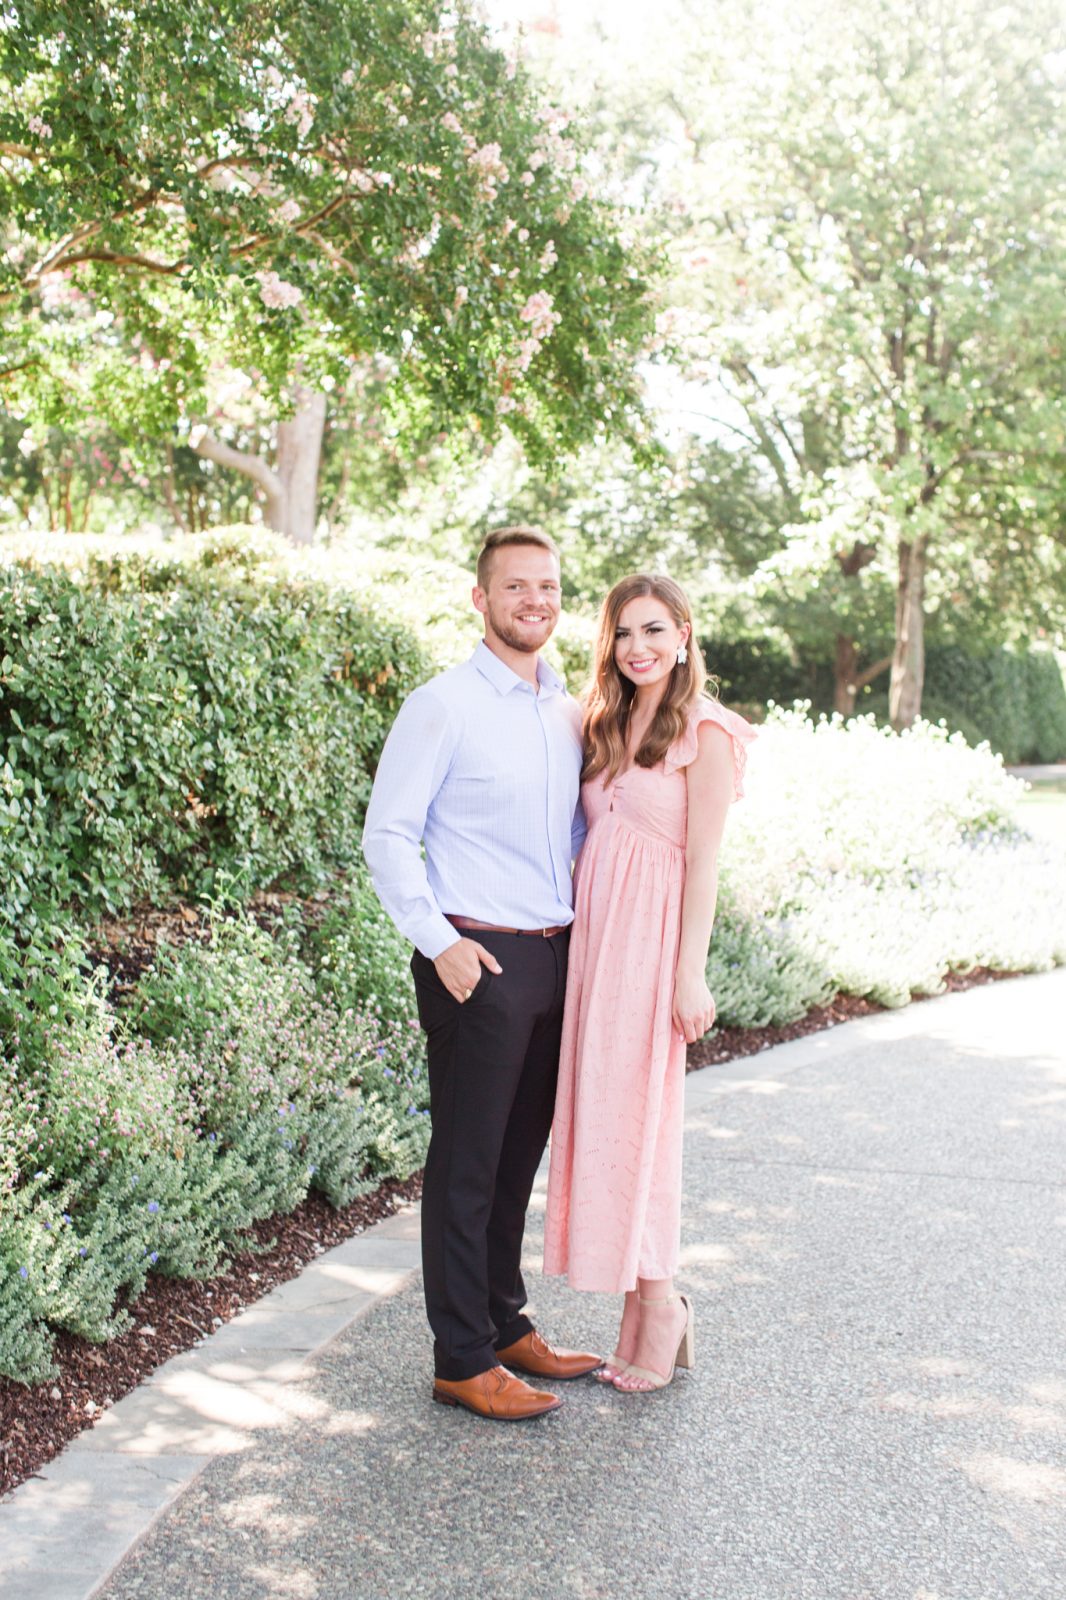 Garrett’s Proposal to Lexi at the Dallas Arboretum | DFW Wedding ...